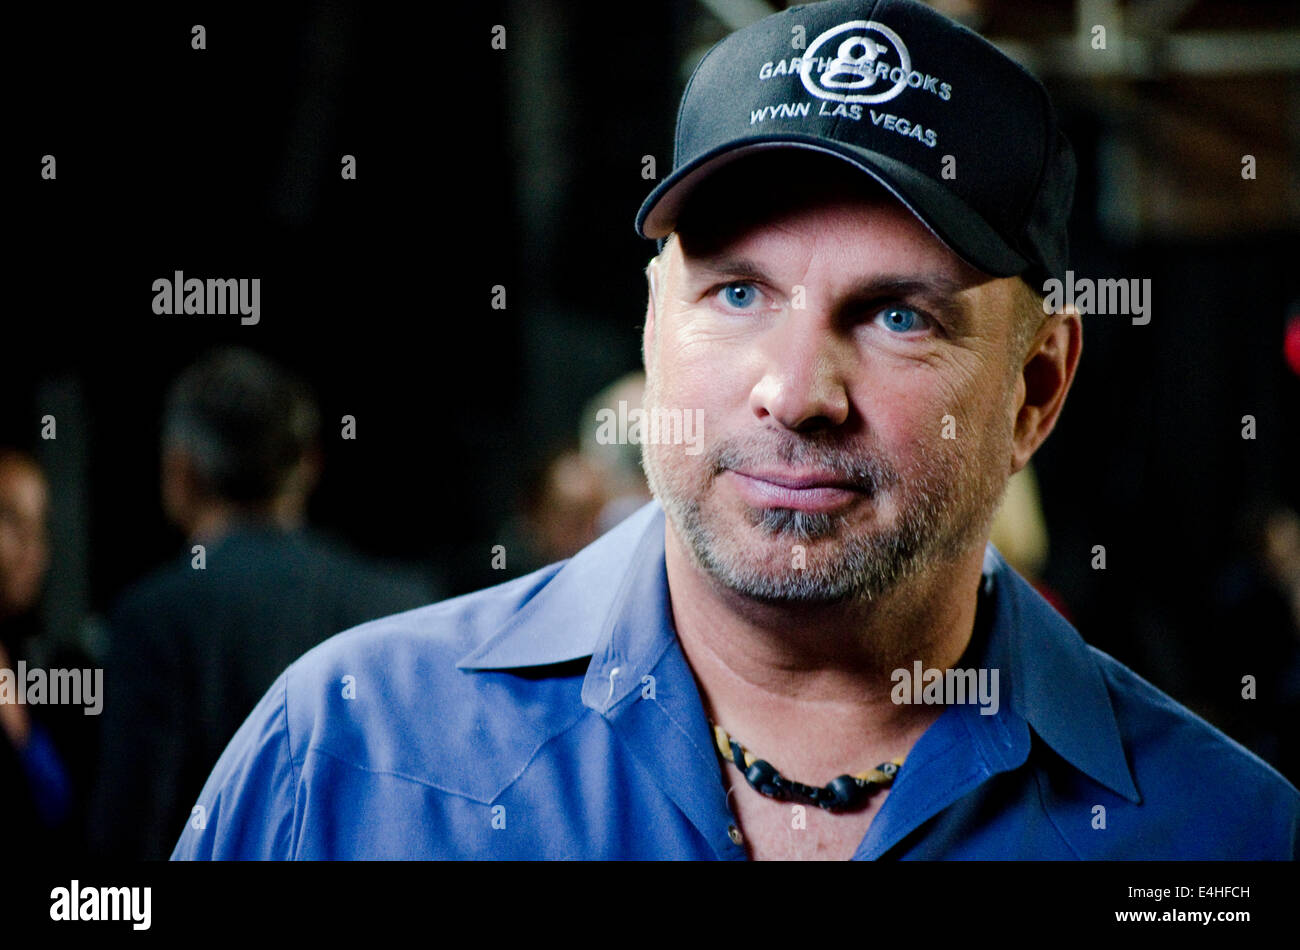 Nashville, Tennessee, 10 de julio de 2014. Garth Brooks, artista de música country, habla en una conferencia de prensa Foto de stock